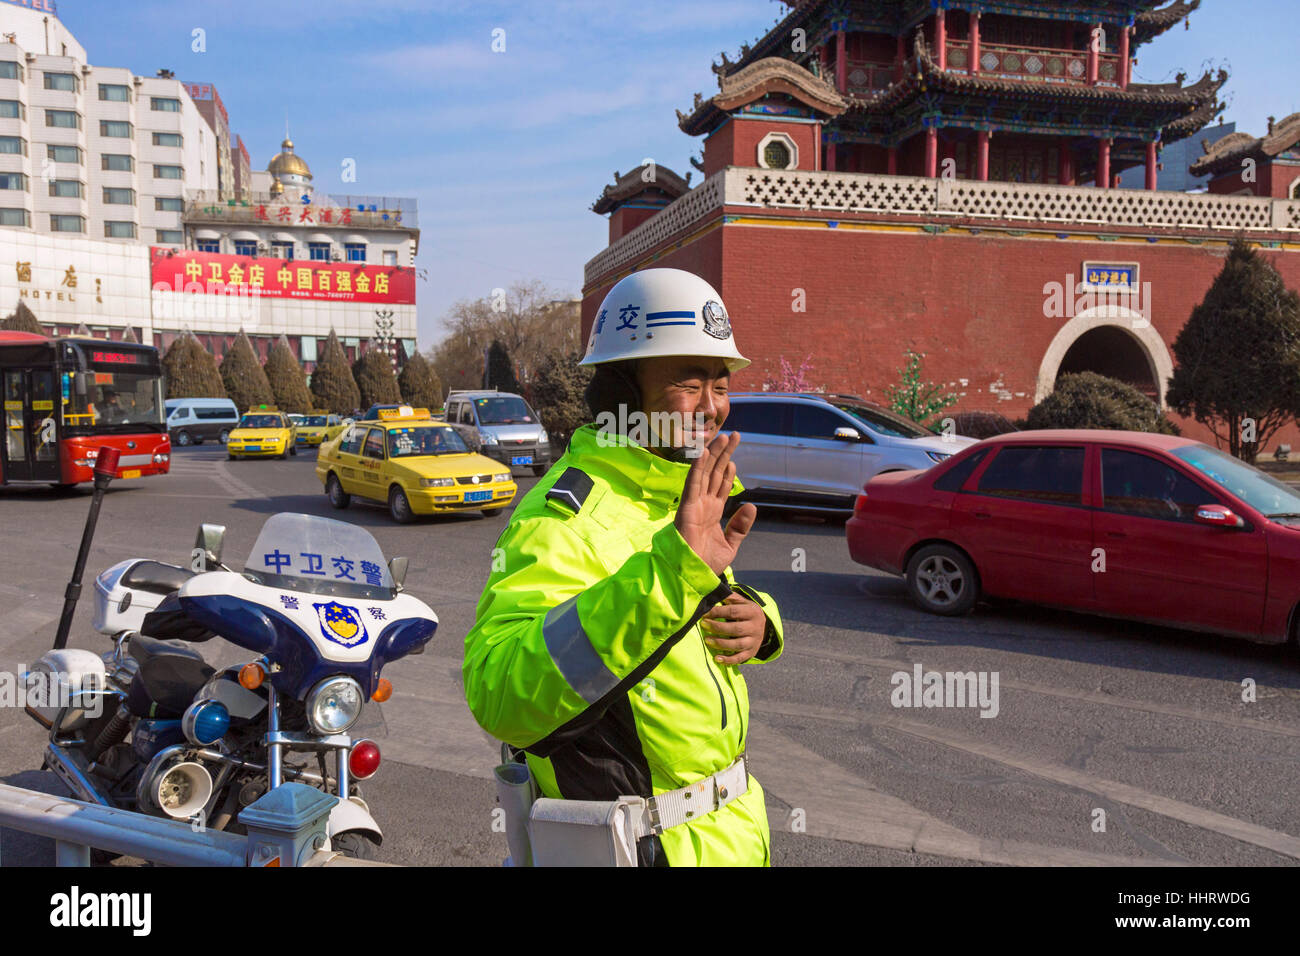 La police de la circulation à Drum Tower Junction, Zhongwei, province de Ningxia, Chine Banque D'Images